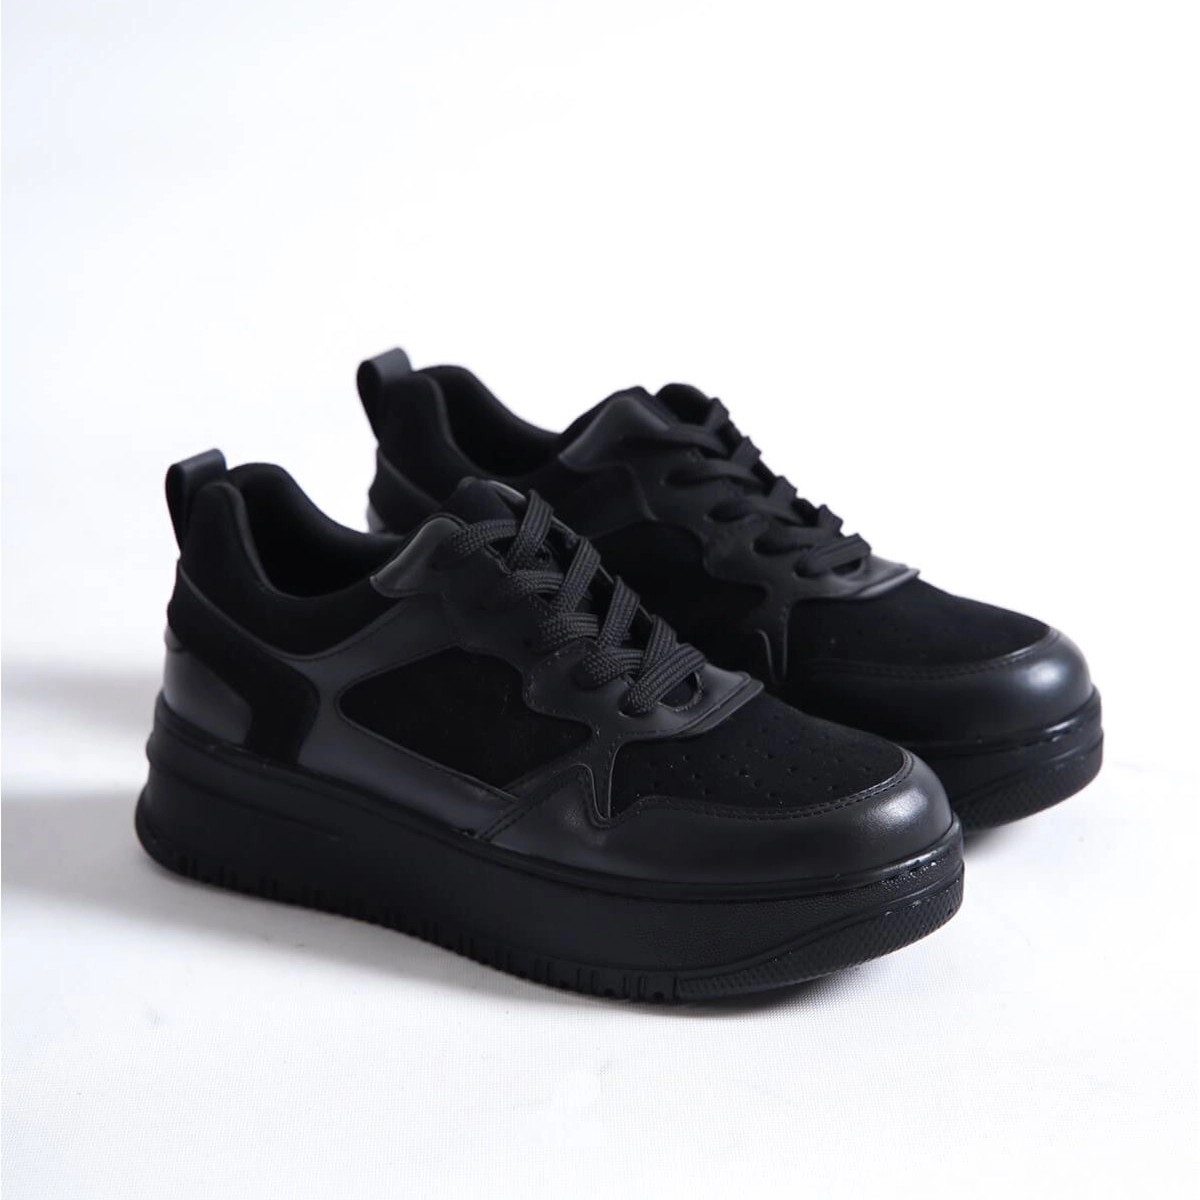 Süet Kalın Tabanlı Sneaker Spor Ayakkabı - Siyah